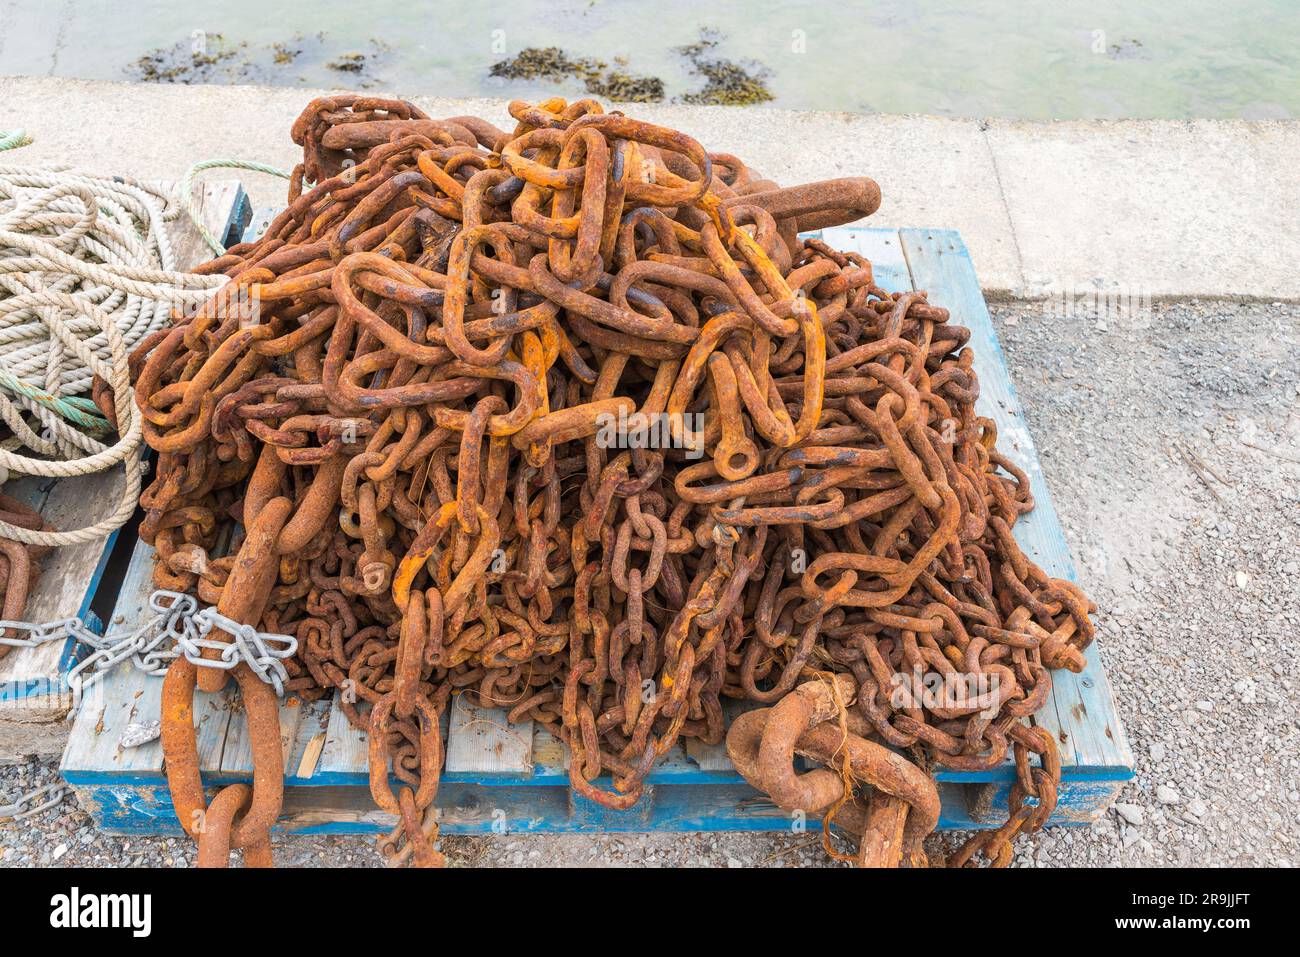 Ein Haufen rostiger Ketten, die zur Befestigung von Anlegebojen am Meeresboden in salcombe, Devon, verwendet werden Stockfoto